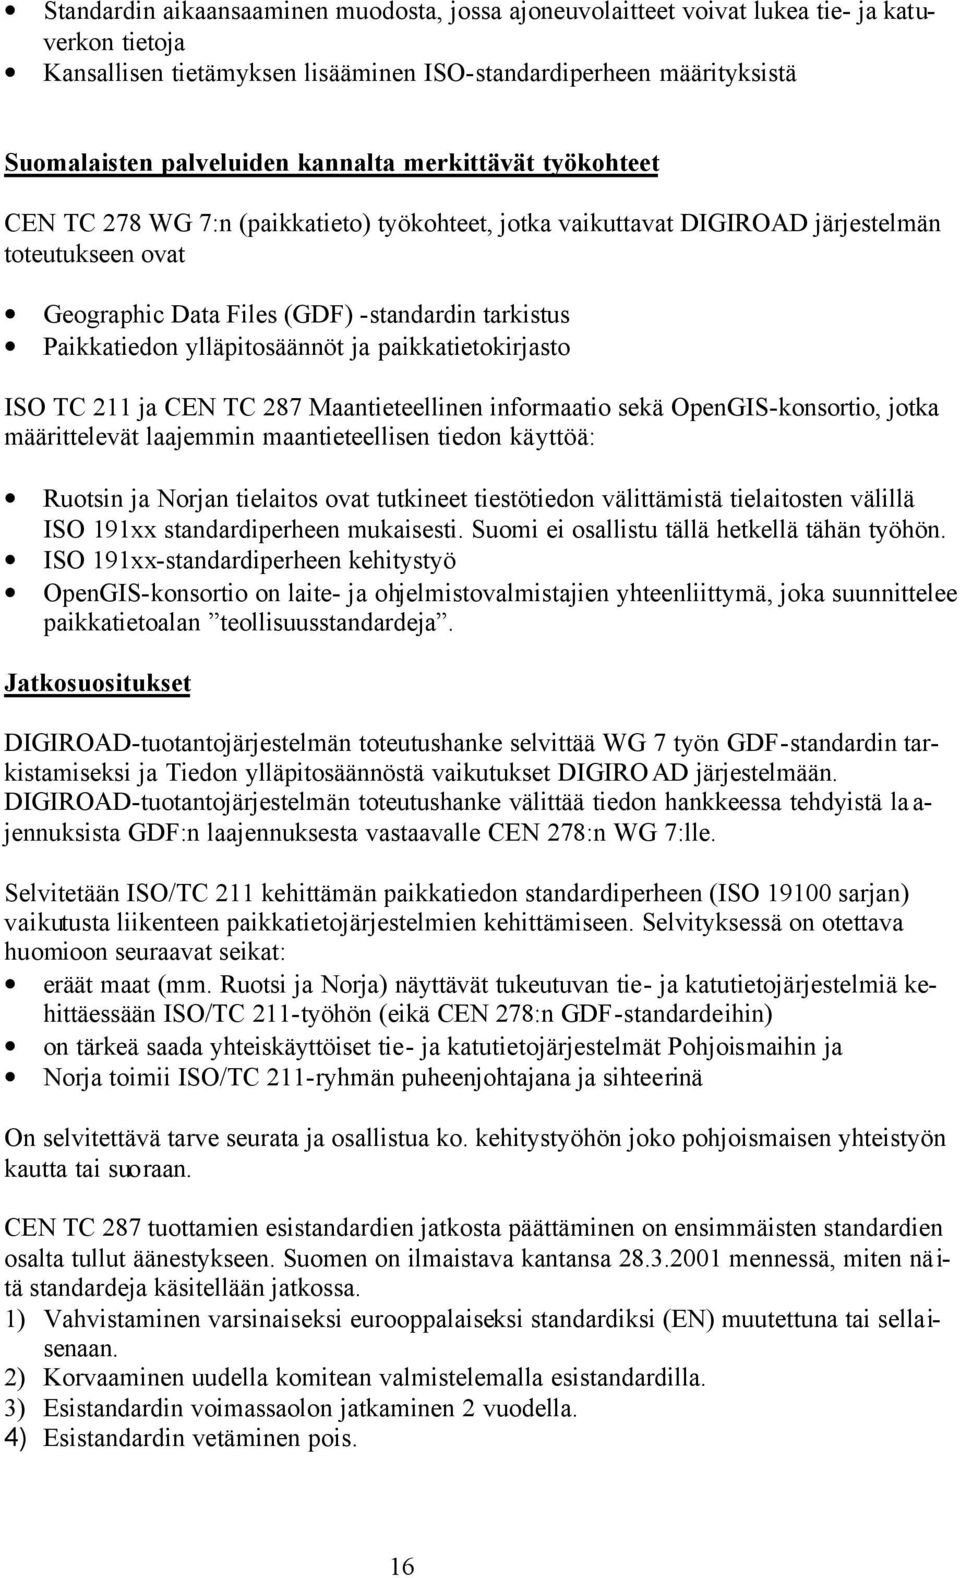 ylläpitosäännöt ja paikkatietokirjasto ISO TC 211 ja CEN TC 287 Maantieteellinen informaatio sekä OpenGIS-konsortio, jotka määrittelevät laajemmin maantieteellisen tiedon käyttöä: Ruotsin ja Norjan